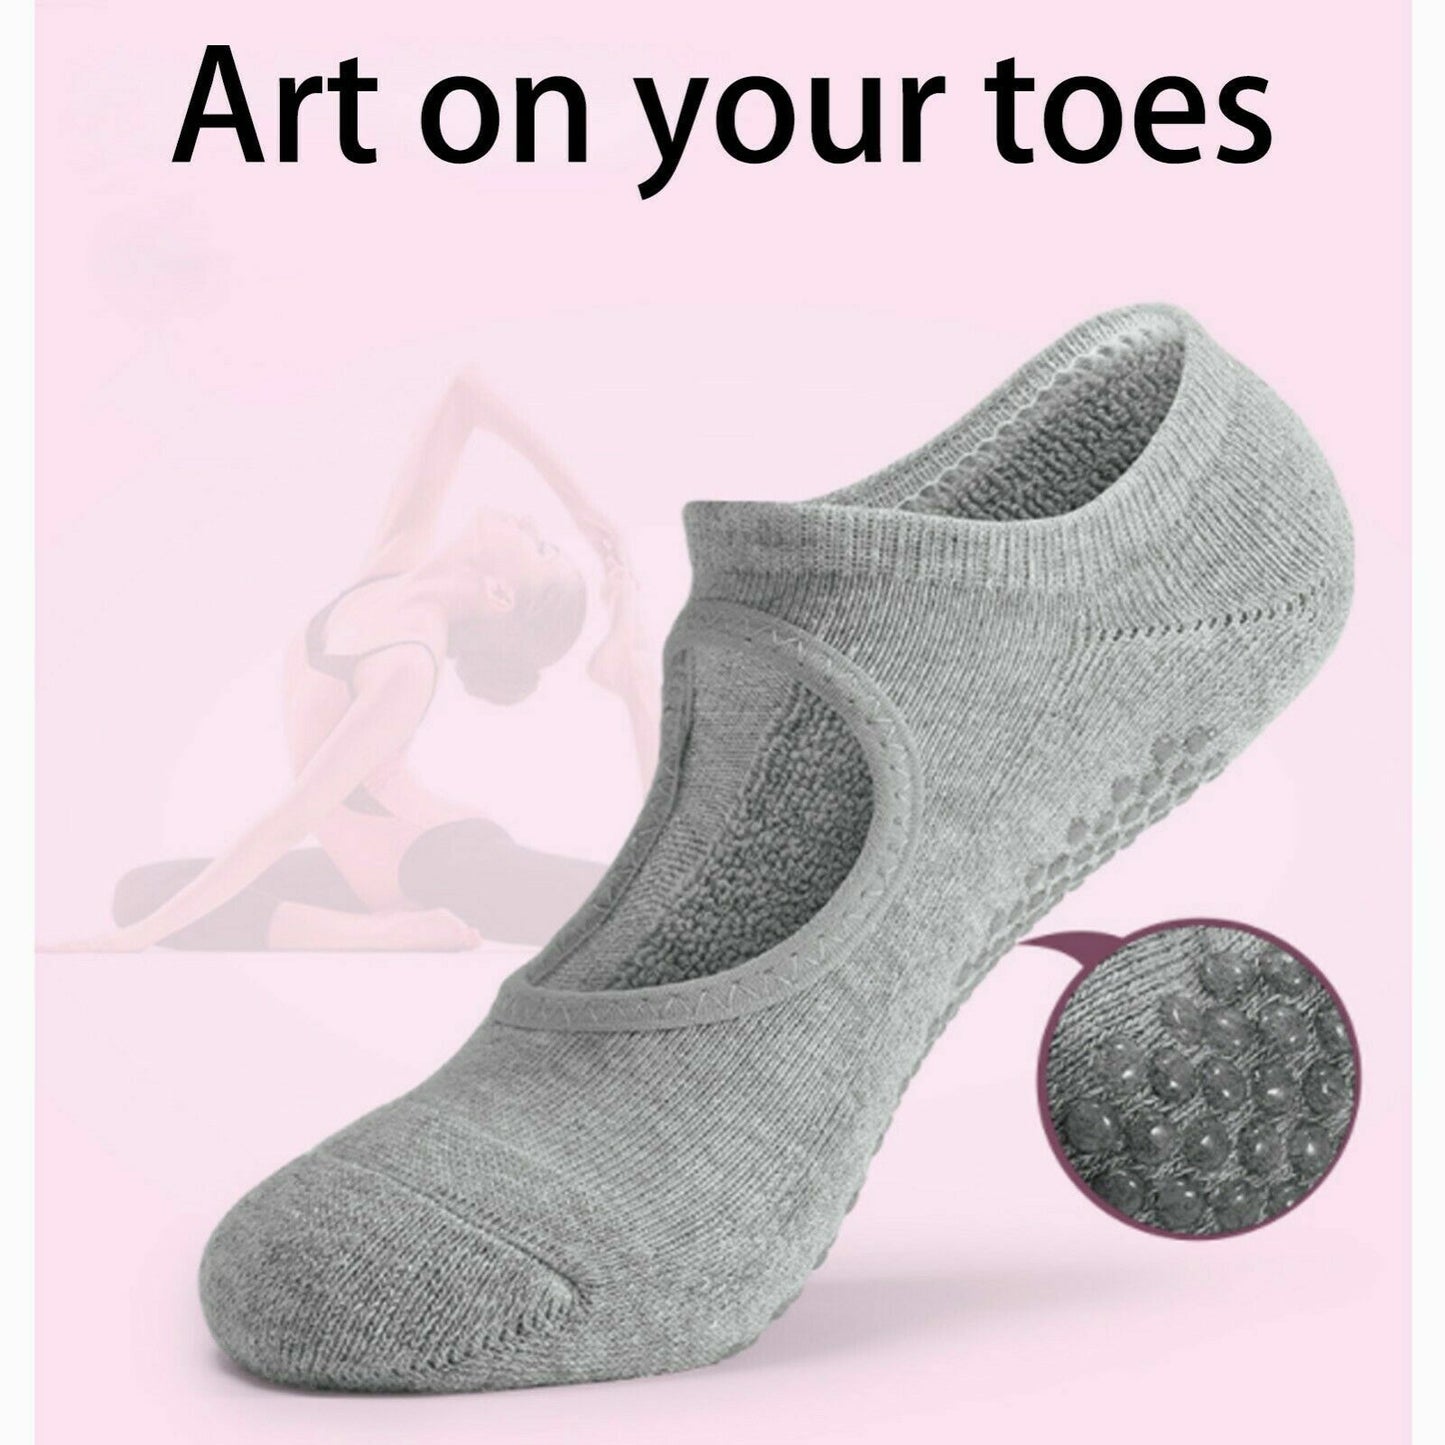 Non Slip Yoga Socks